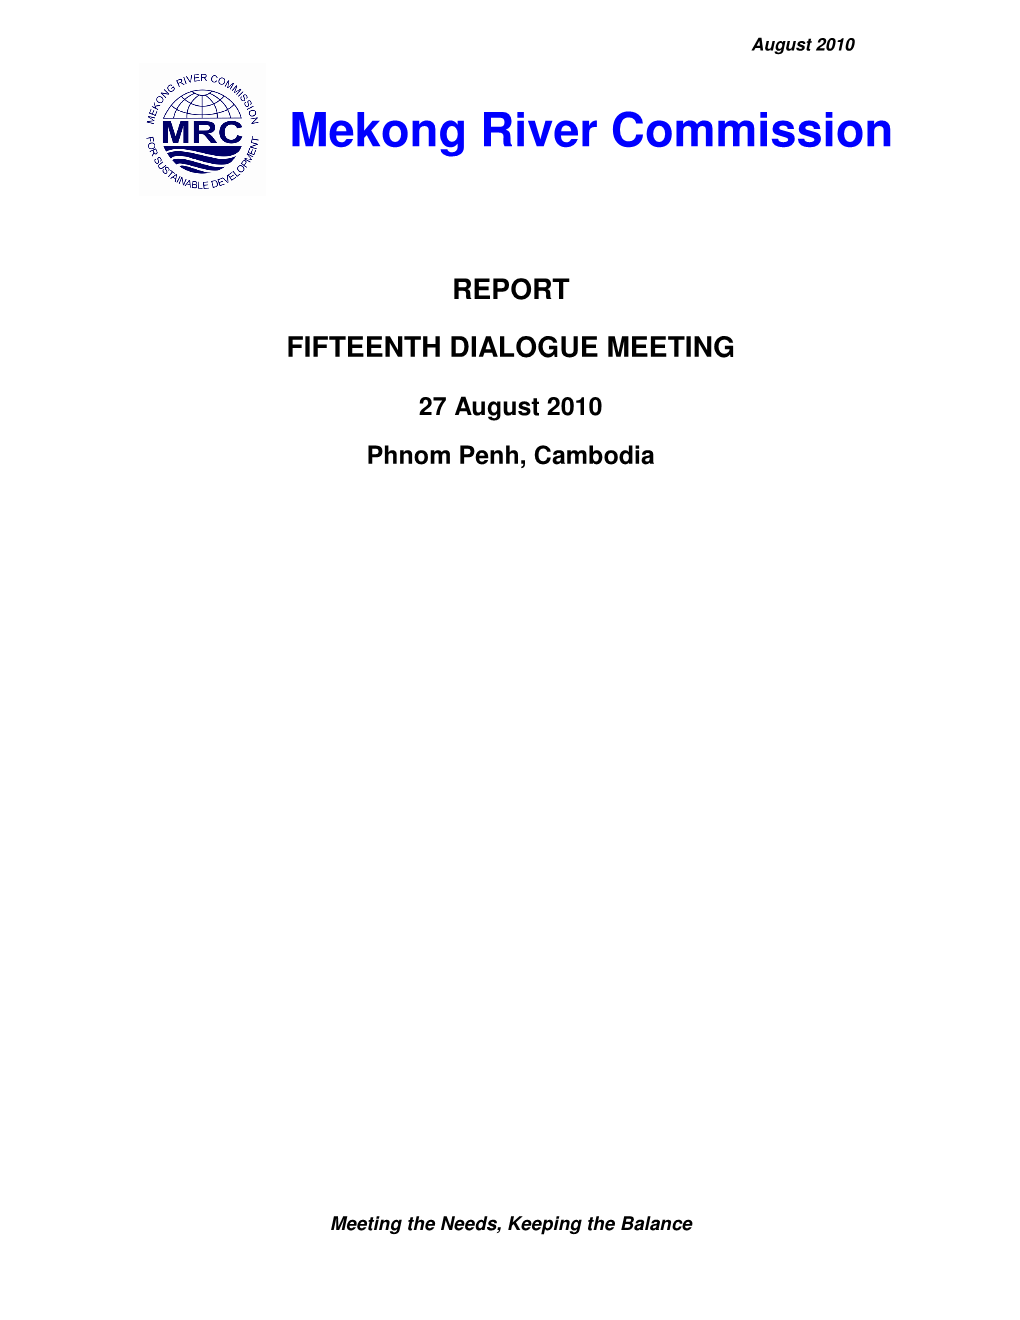 Report Fifteenth Dialogue Meeting